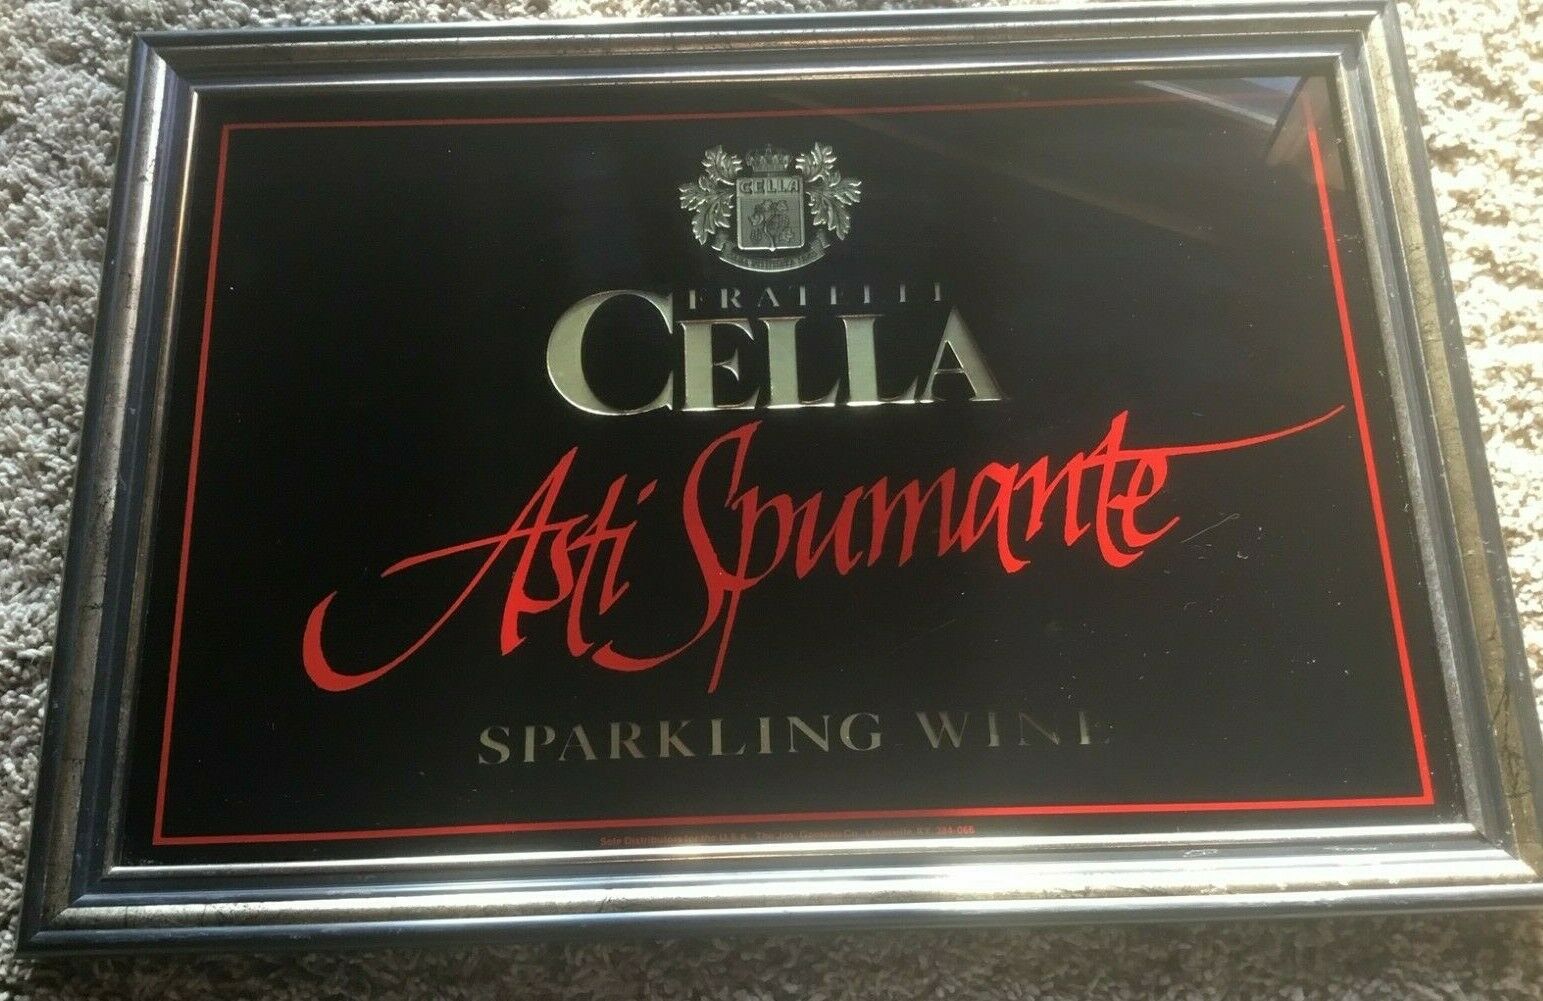 Frantelli Cella Asti Spumante Champaign Mirror Bar Advertising Sign.